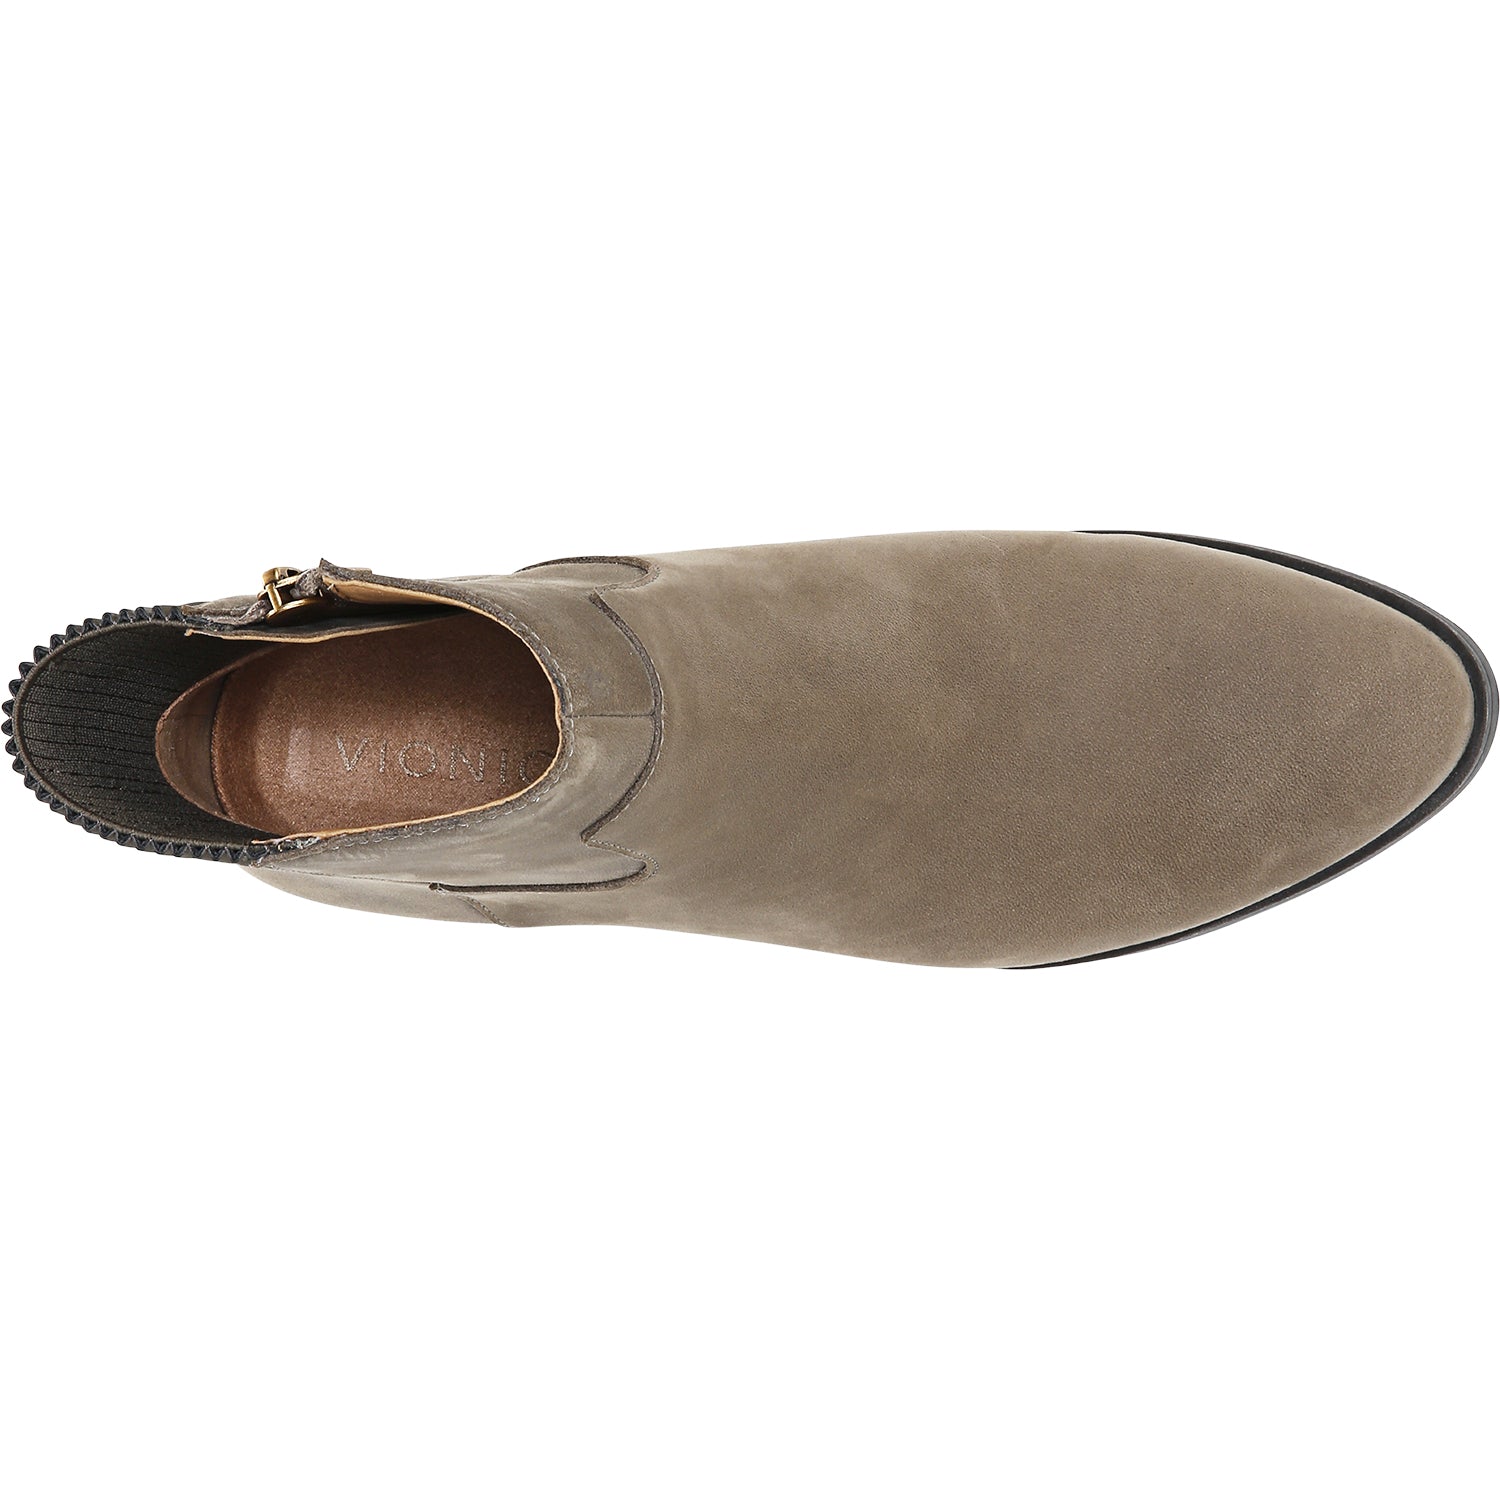 Vionic Shantelle Stone | Women's Waterproof Boots | Footwear etc.